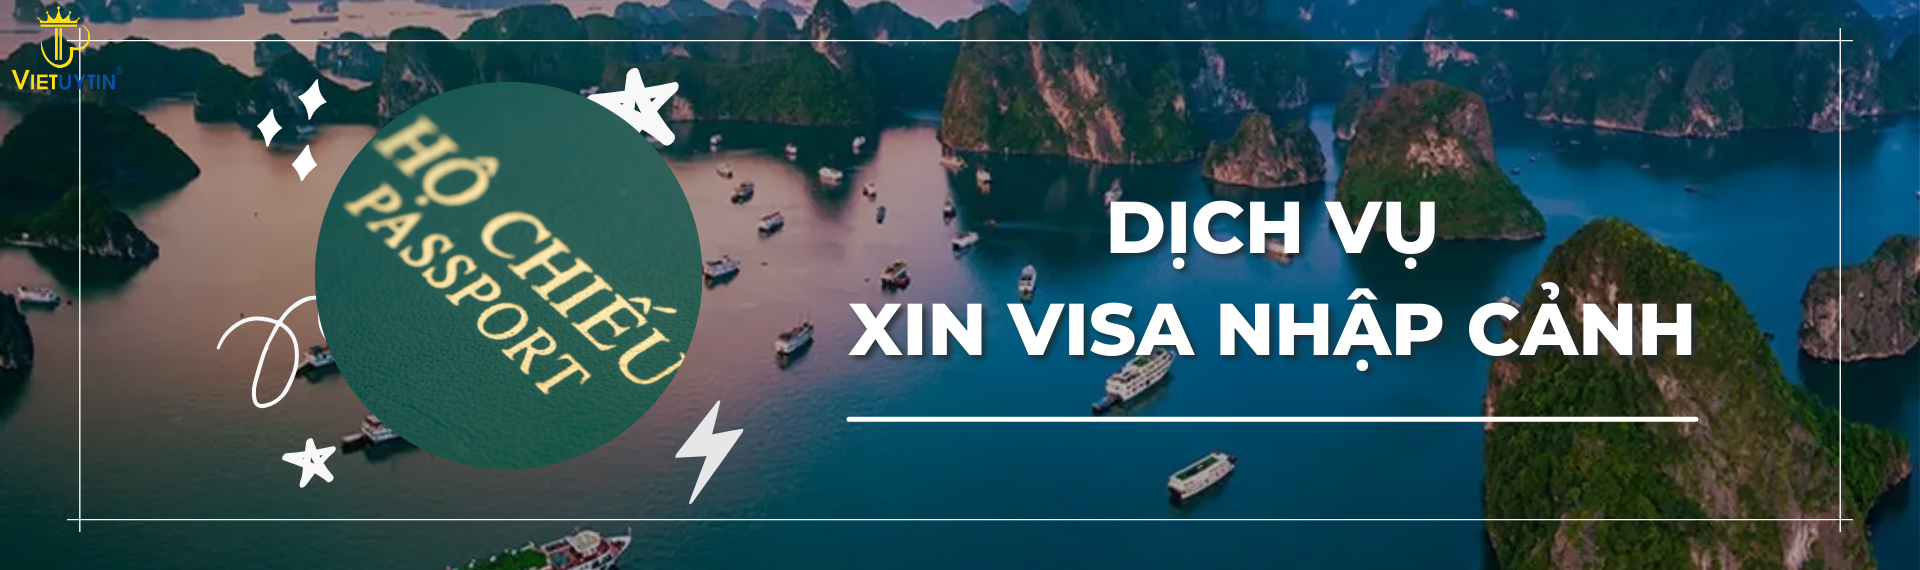 Dịch vụ visa nhập cảnh Việt Nam